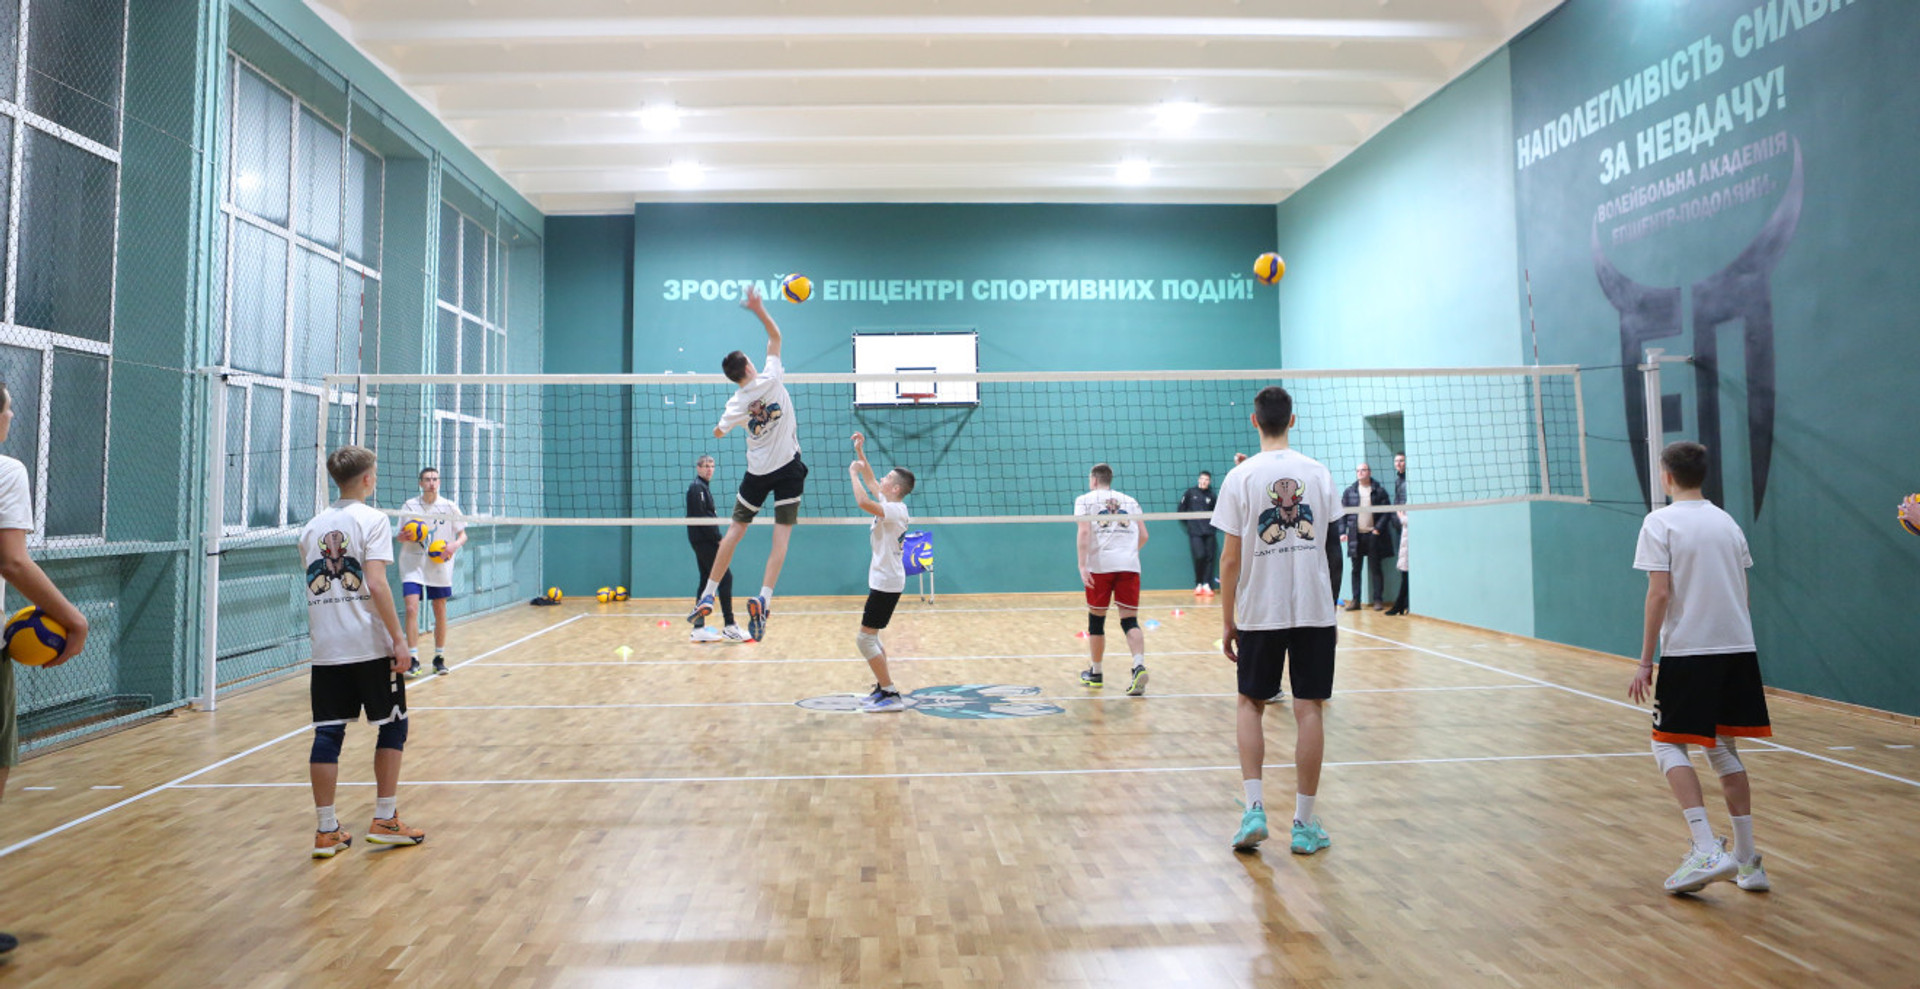 Як попри війну в Україні готують спортивних зірок європейського рівня